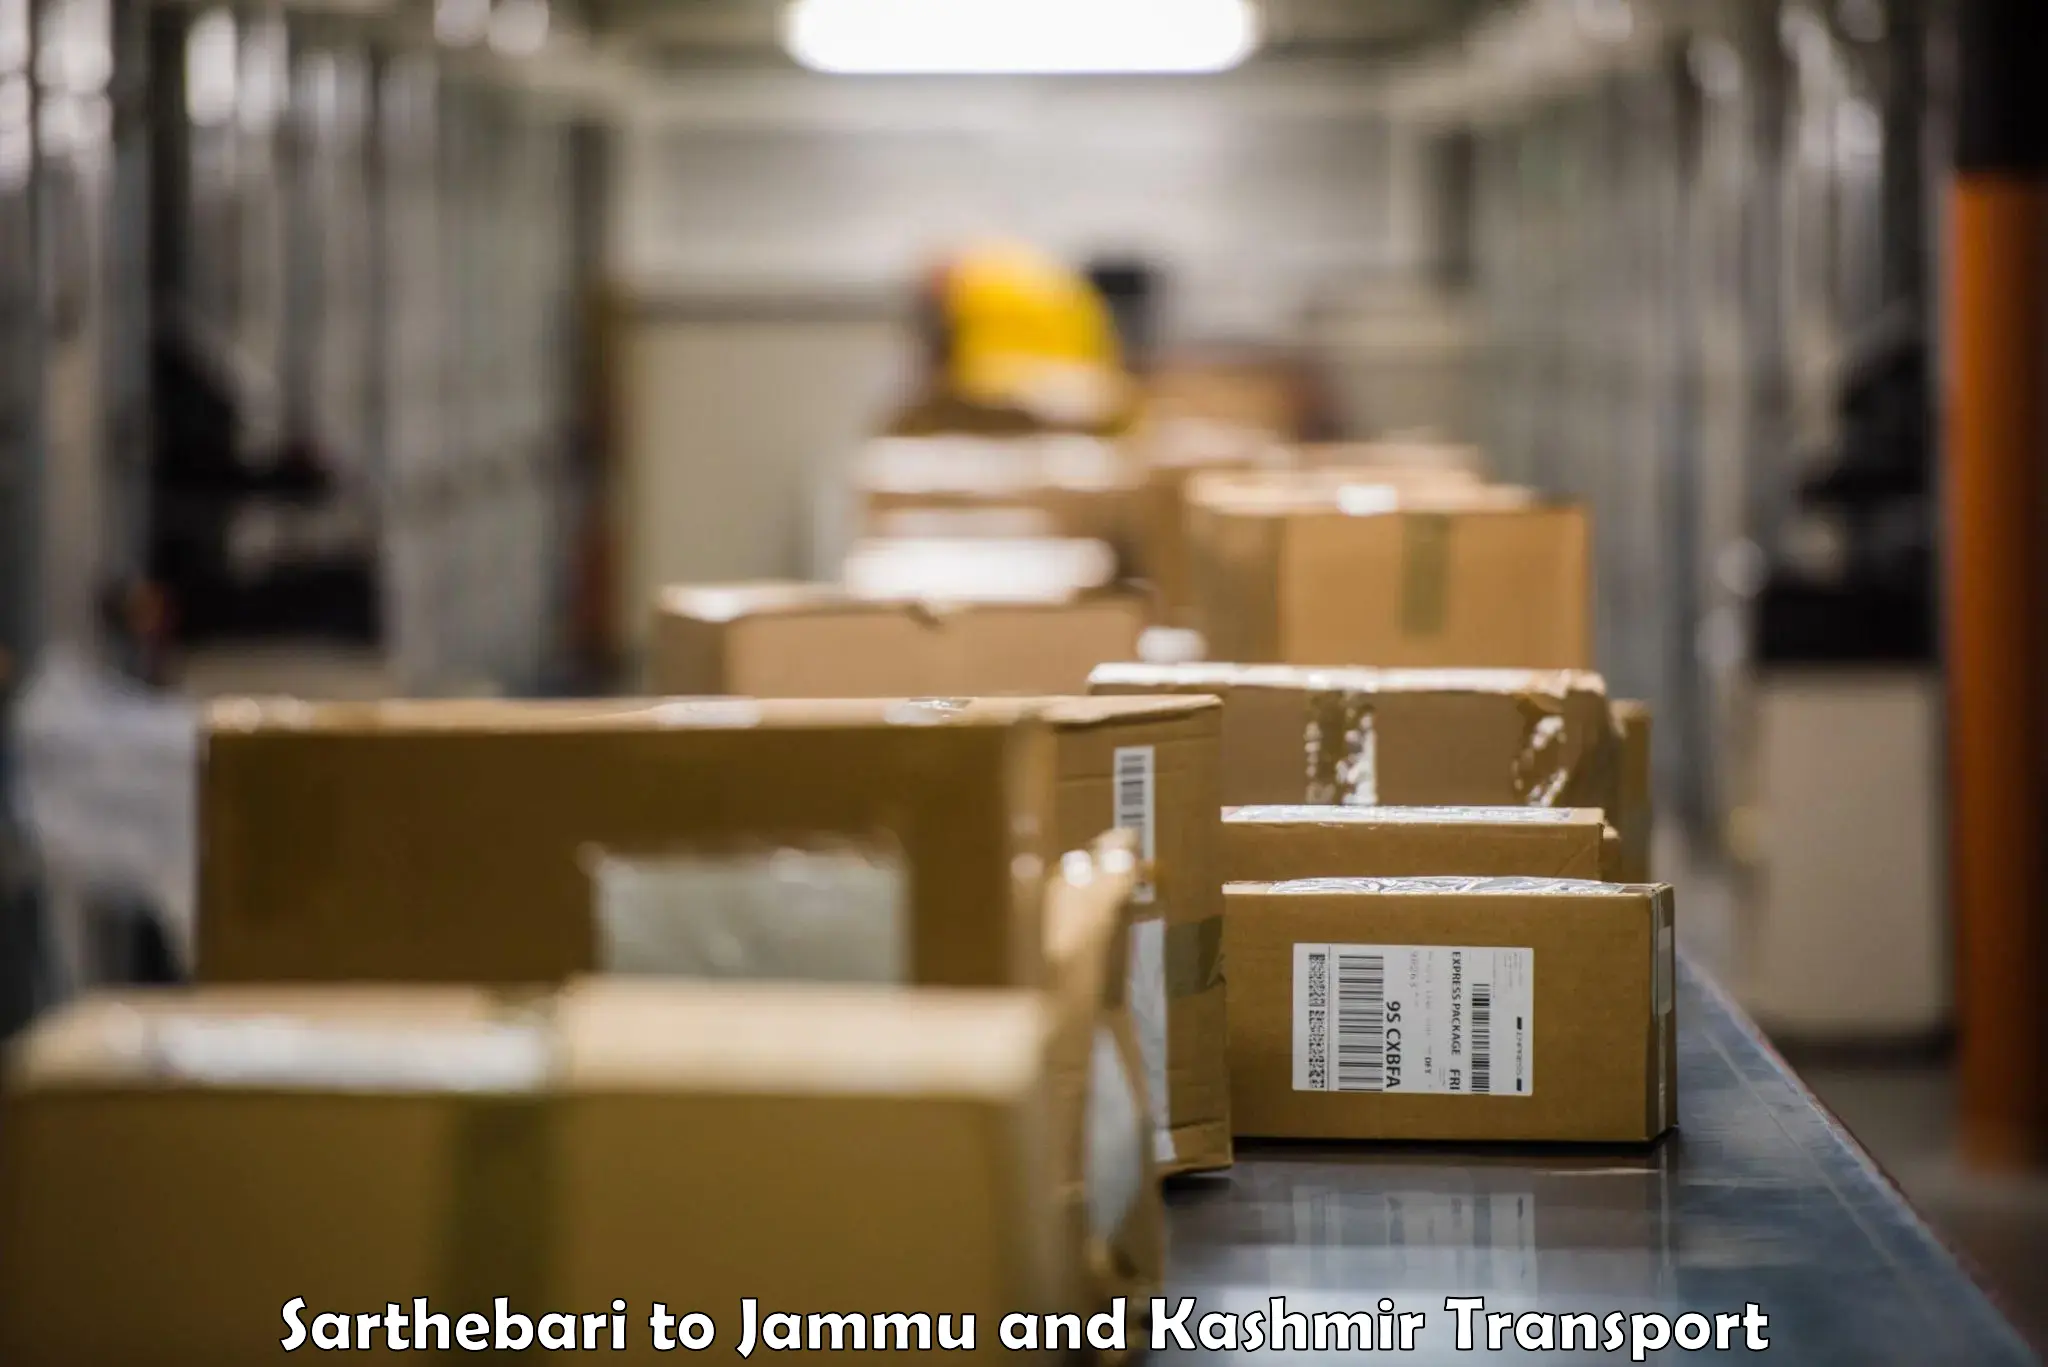 Air freight transport services Sarthebari to Jammu and Kashmir